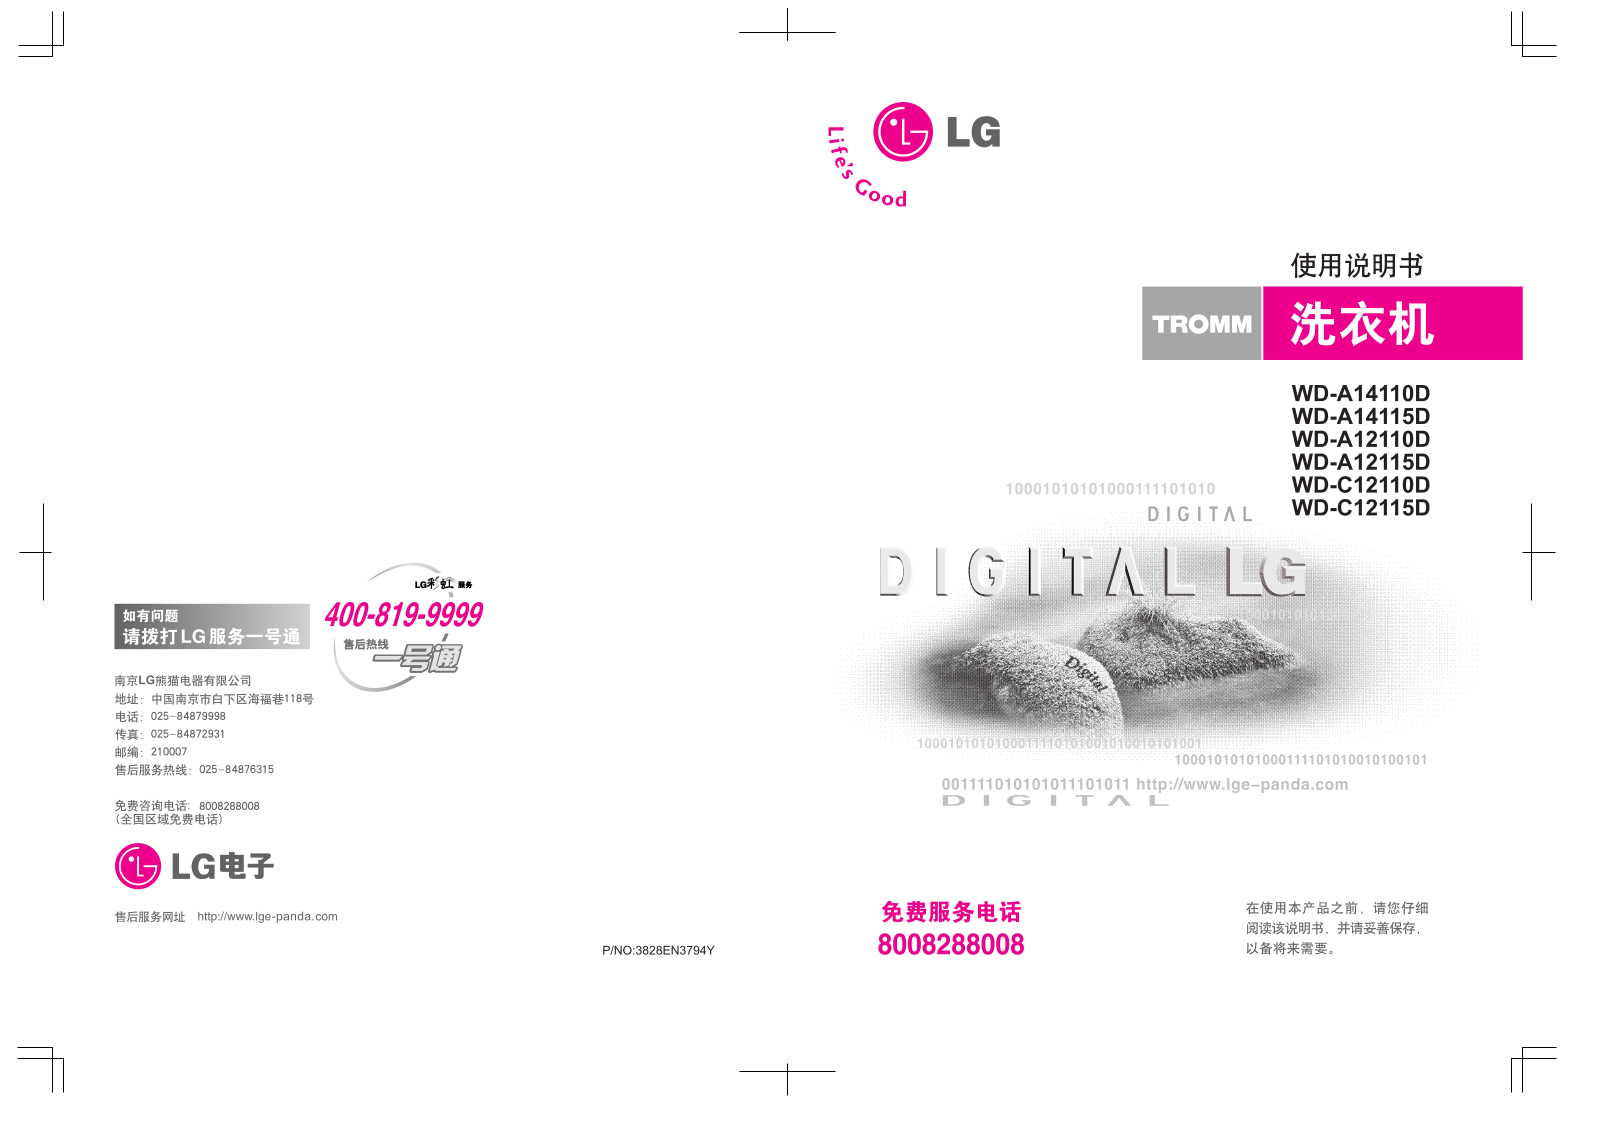 LG WD-A14110D, WD-A14115D, WD-A12110D, WD-A12115D, WD-C12110D User Manual